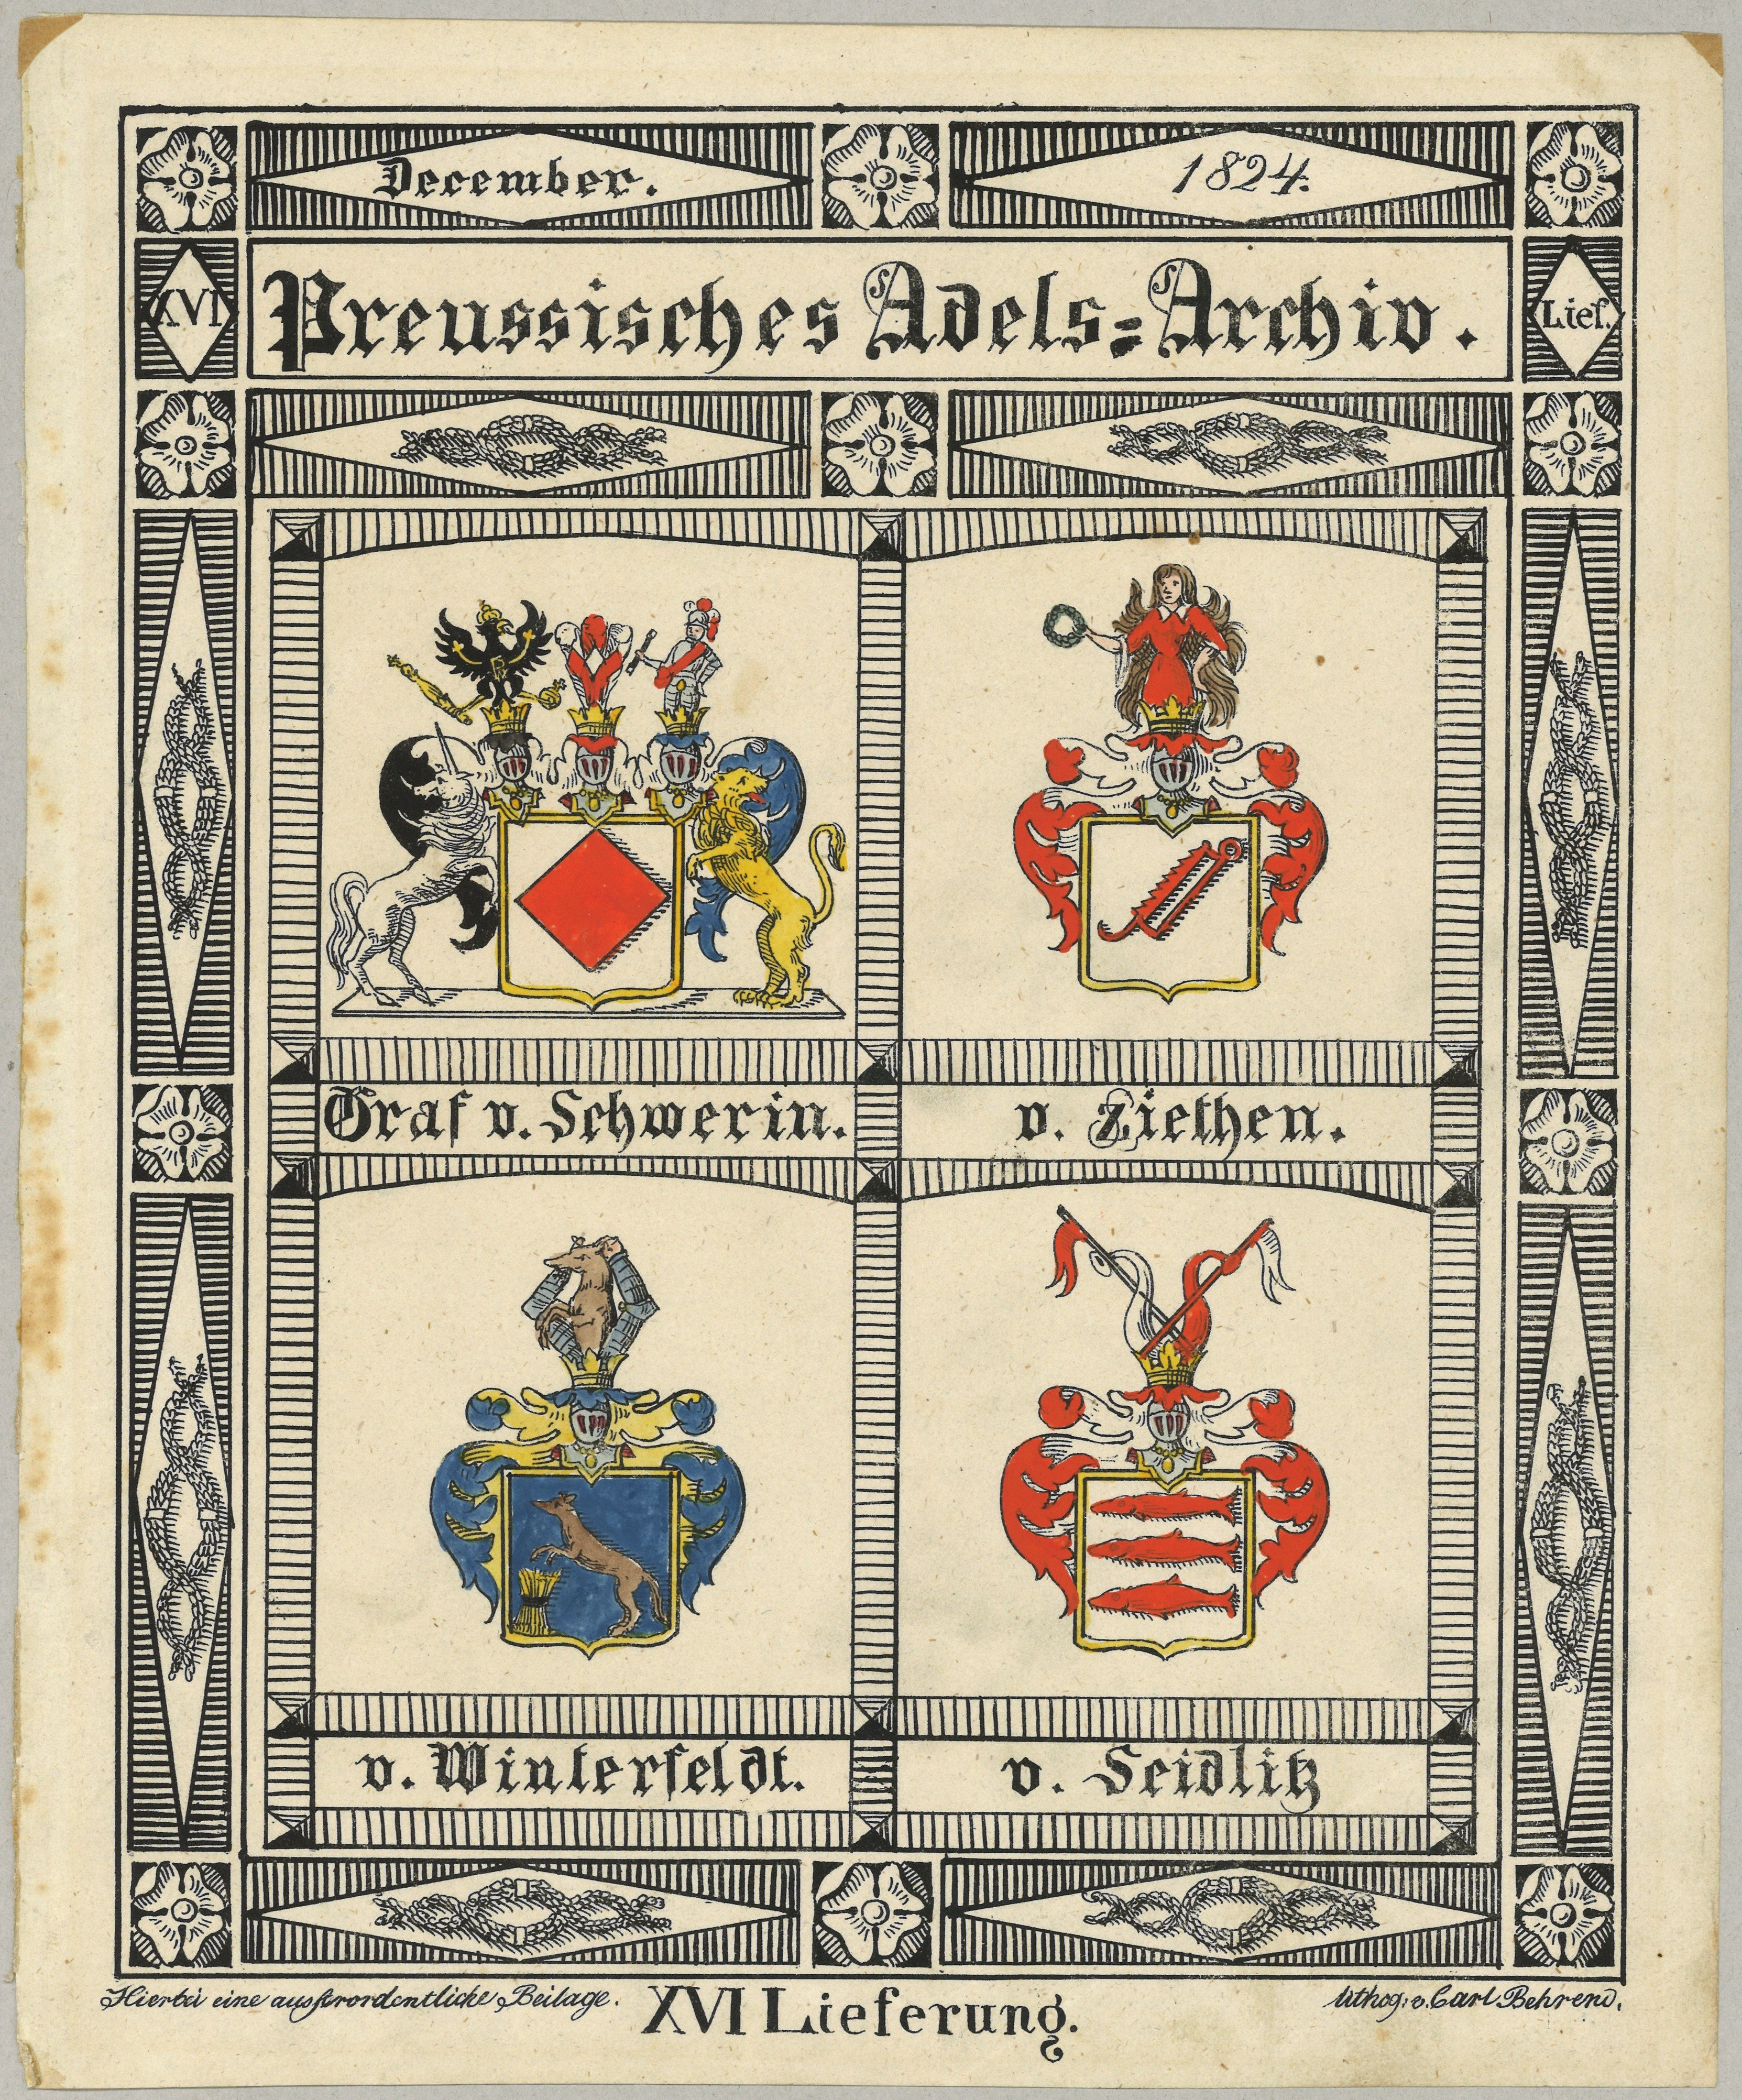 Vier Wappen preußischer Adelsfamilien: Graf von Schwerin, von Seydlitz, von Winterfeldt, von Zieten (Landesgeschichtliche Vereinigung für die Mark Brandenburg e.V., Archiv CC BY)